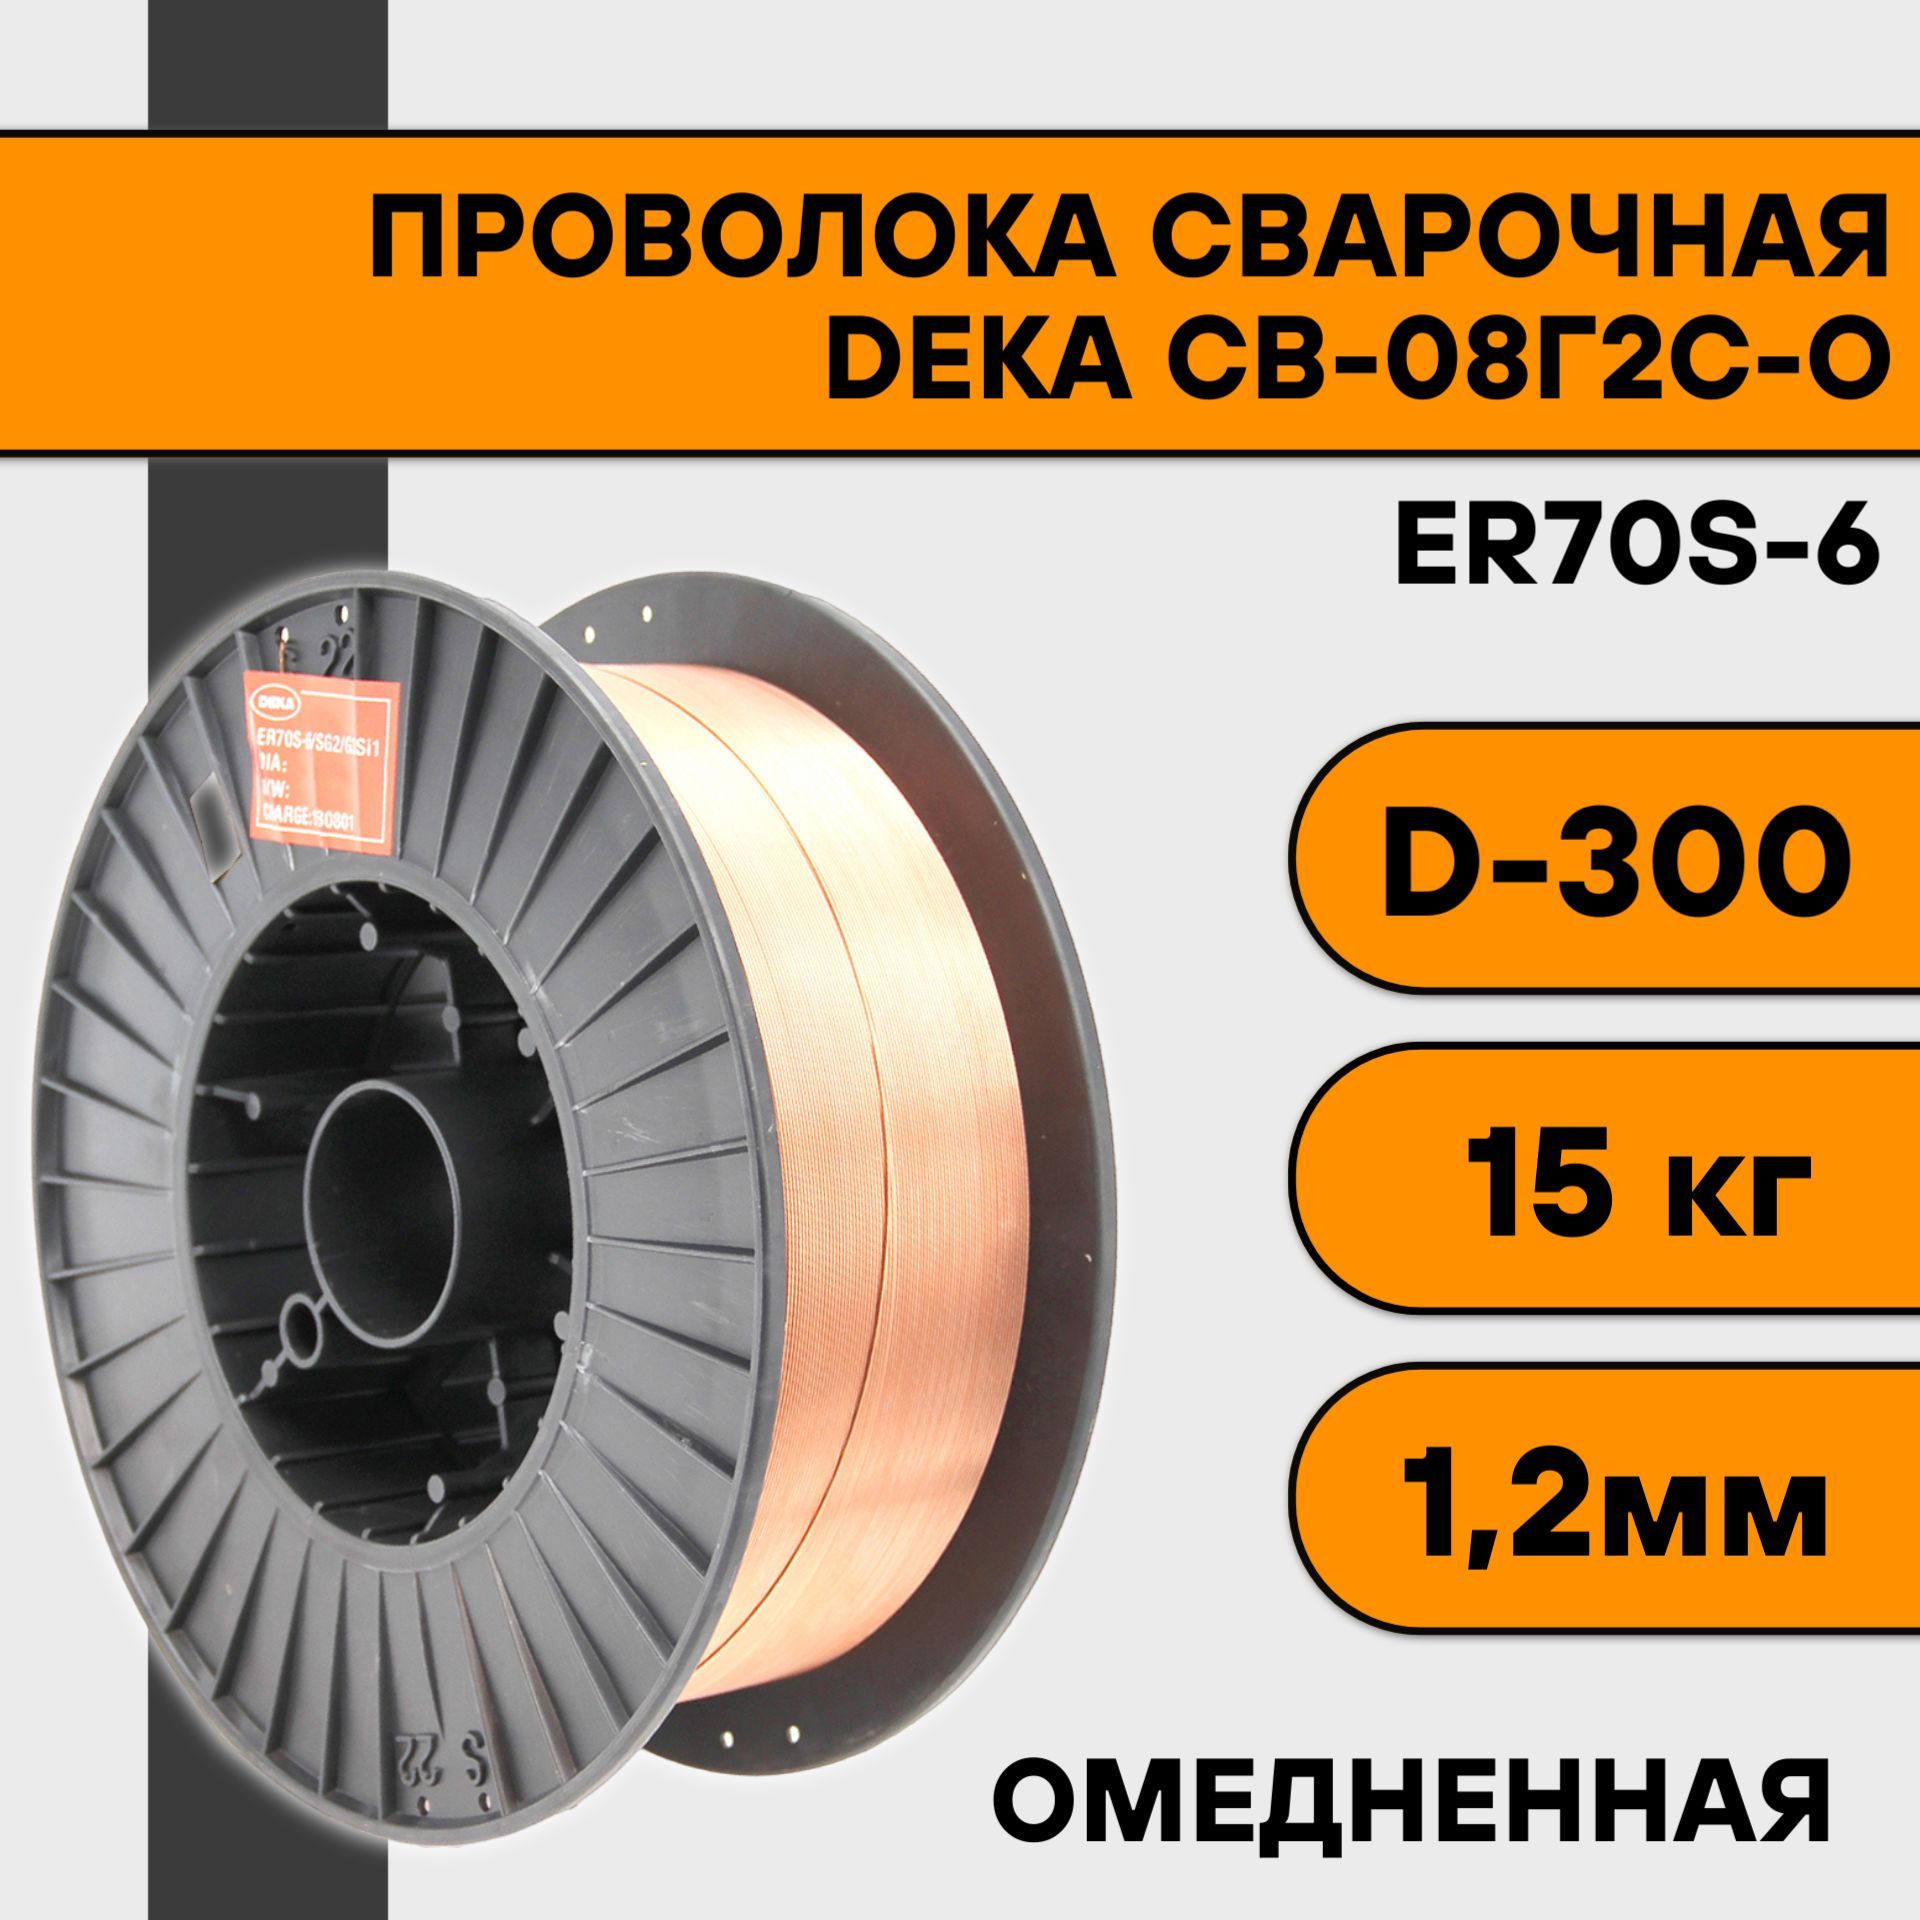 Сварочная проволока омедненная Deka ER70S-6 ф 1,2 мм (15 кг) D300 сварочная проволока на b300 к300 спарк